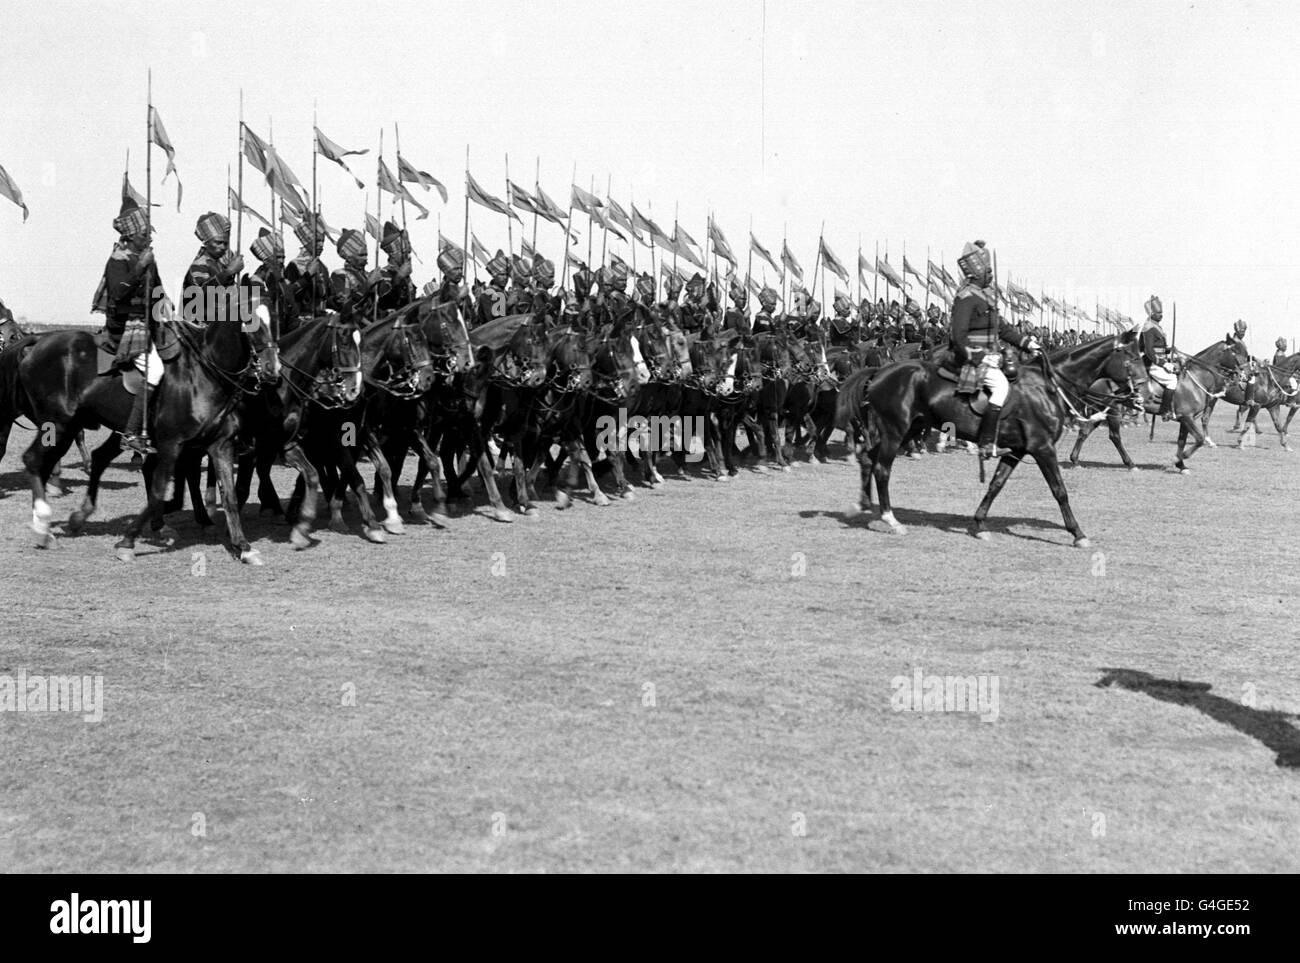 1911 : die Bengal Lancers, eines der berühmtesten Kavallerieregimenter der indischen Armee, die an der Durbar von Delhi von 1911 teilnahmen. Stockfoto